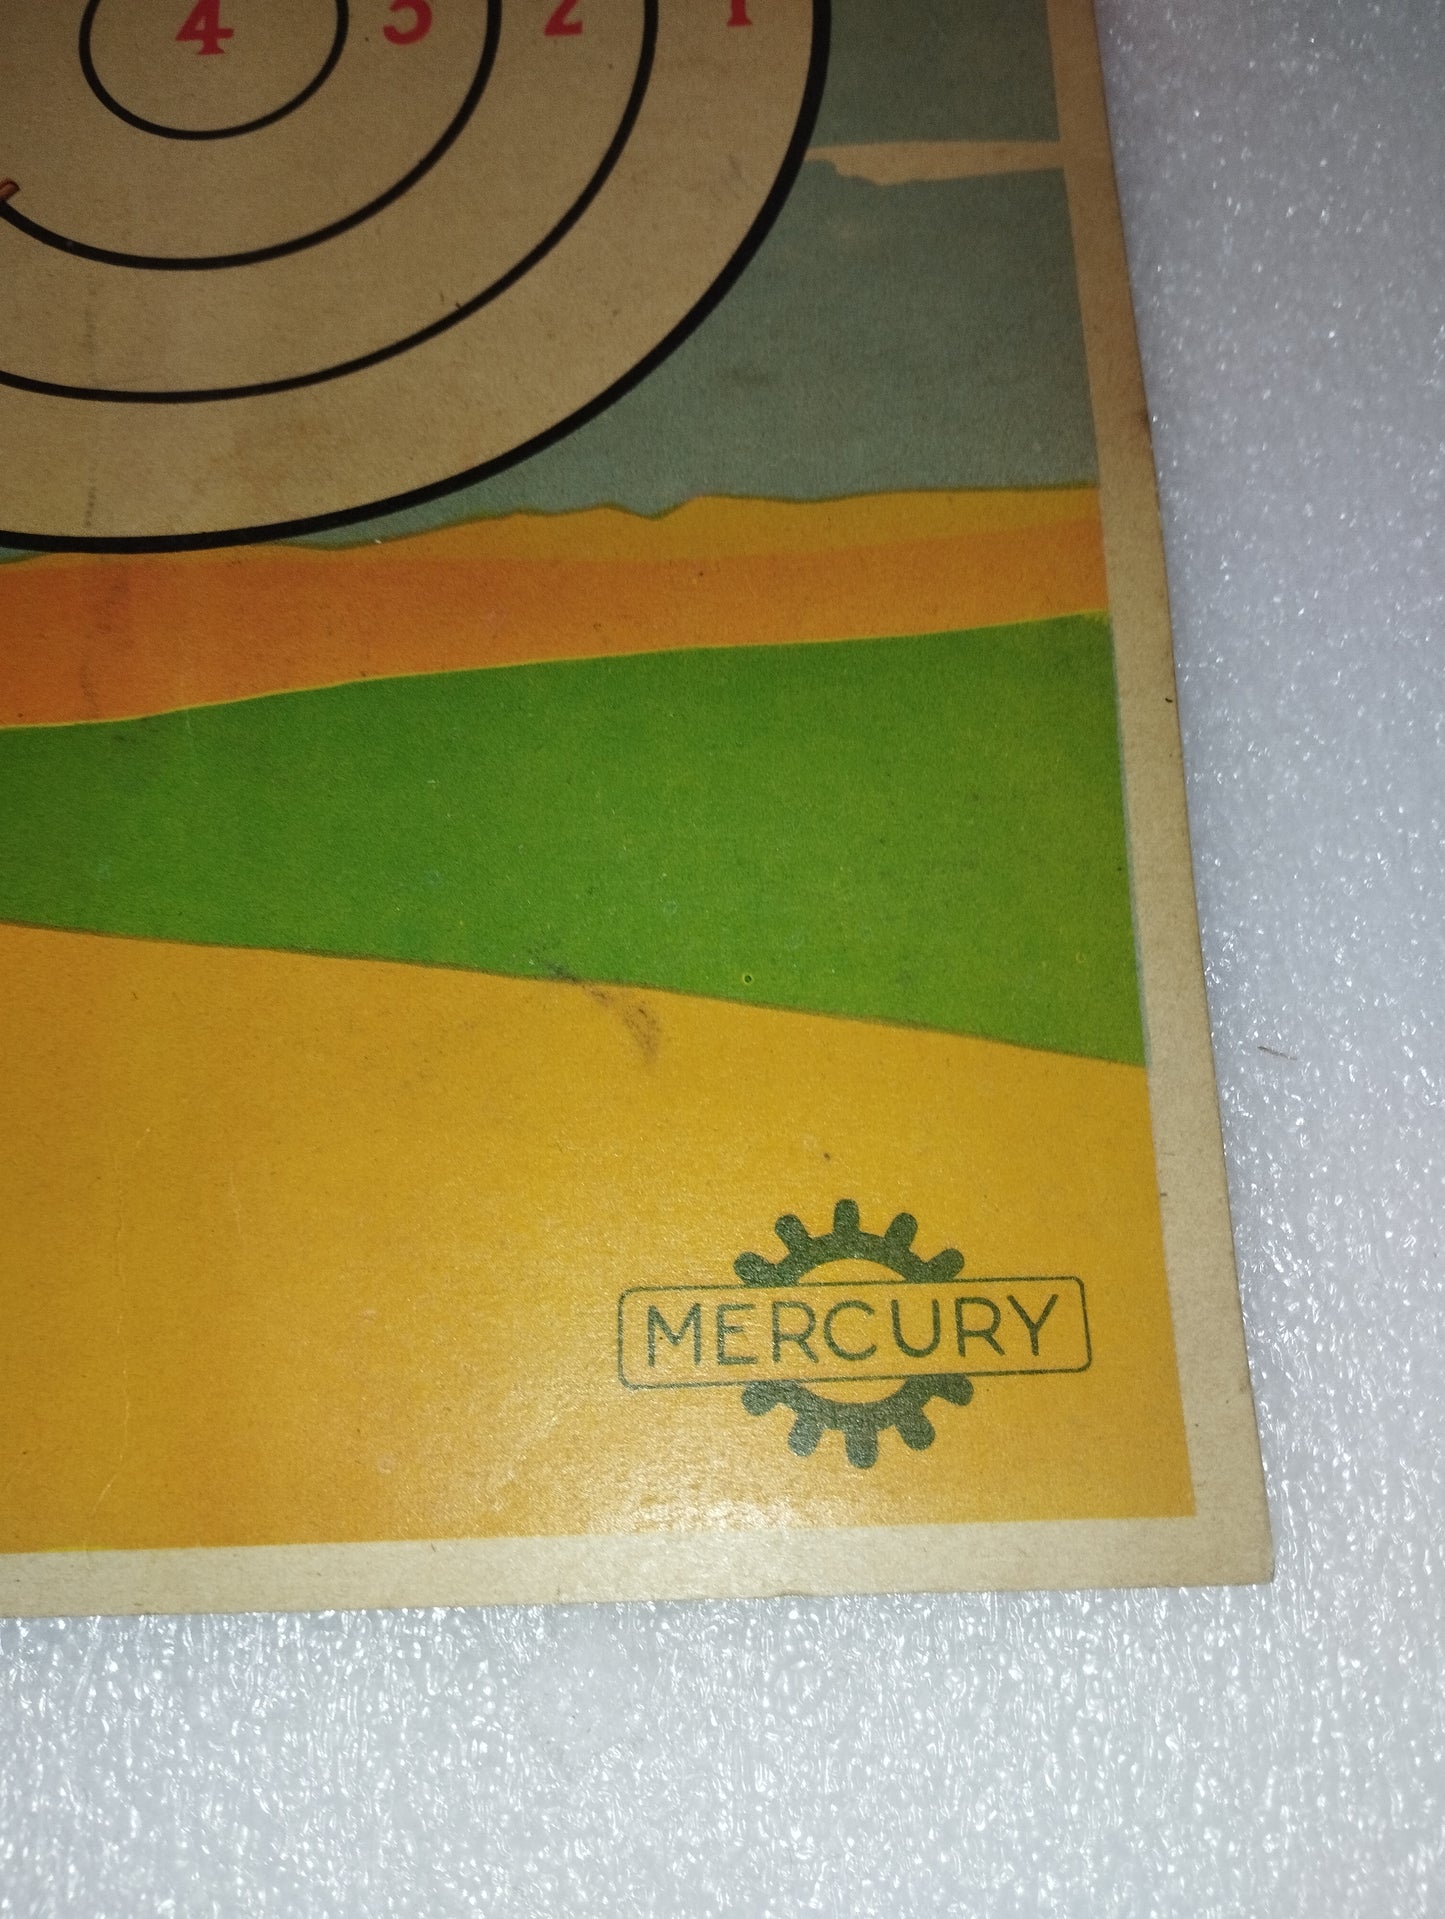 Mercury target in vintage cardboard